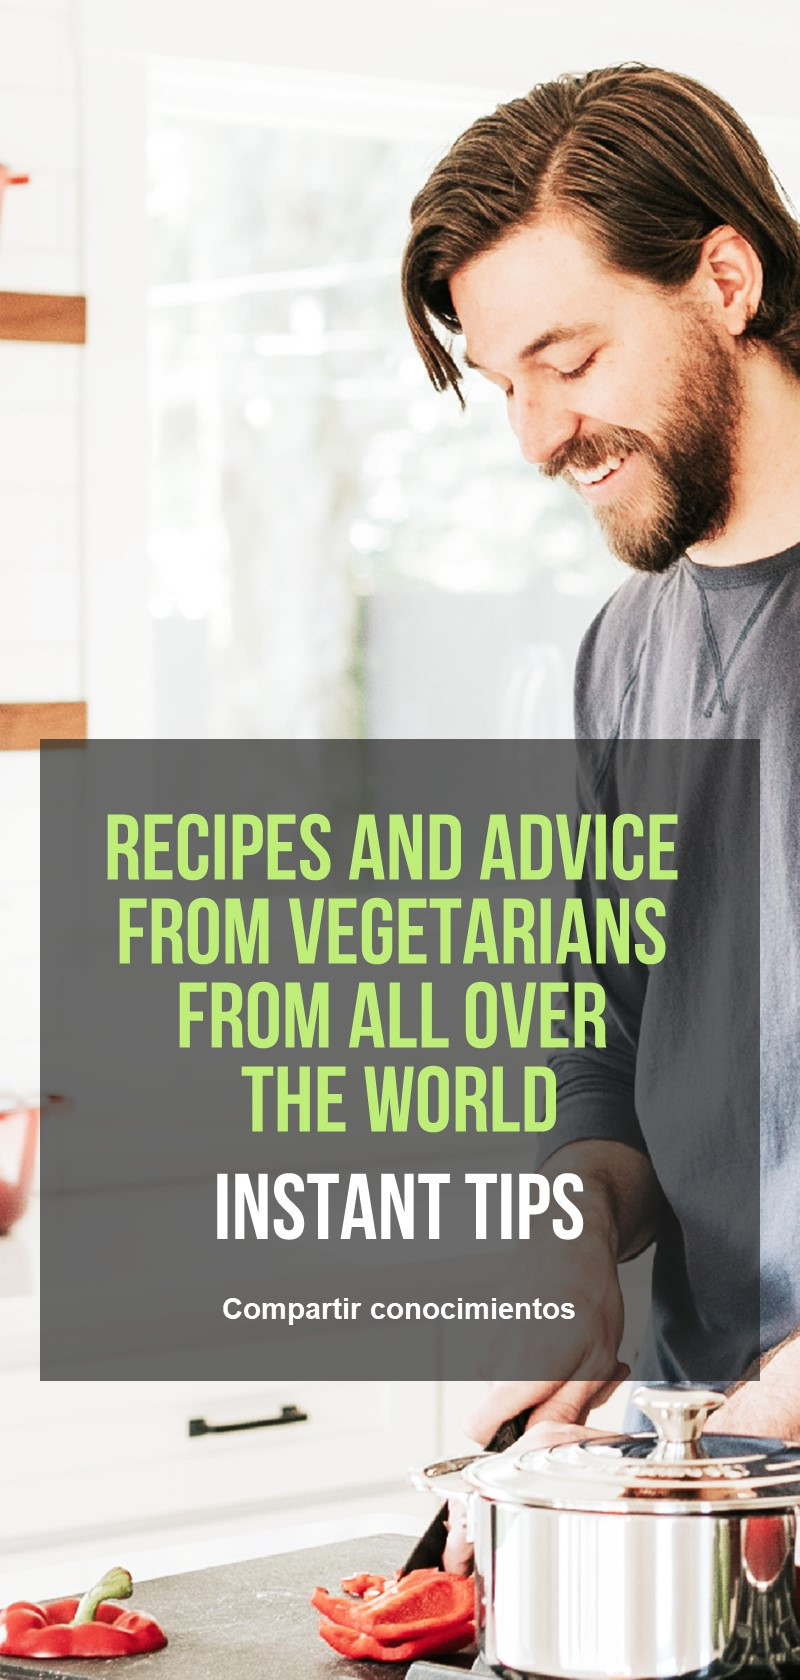 Recetas y consejos de vegetarianos